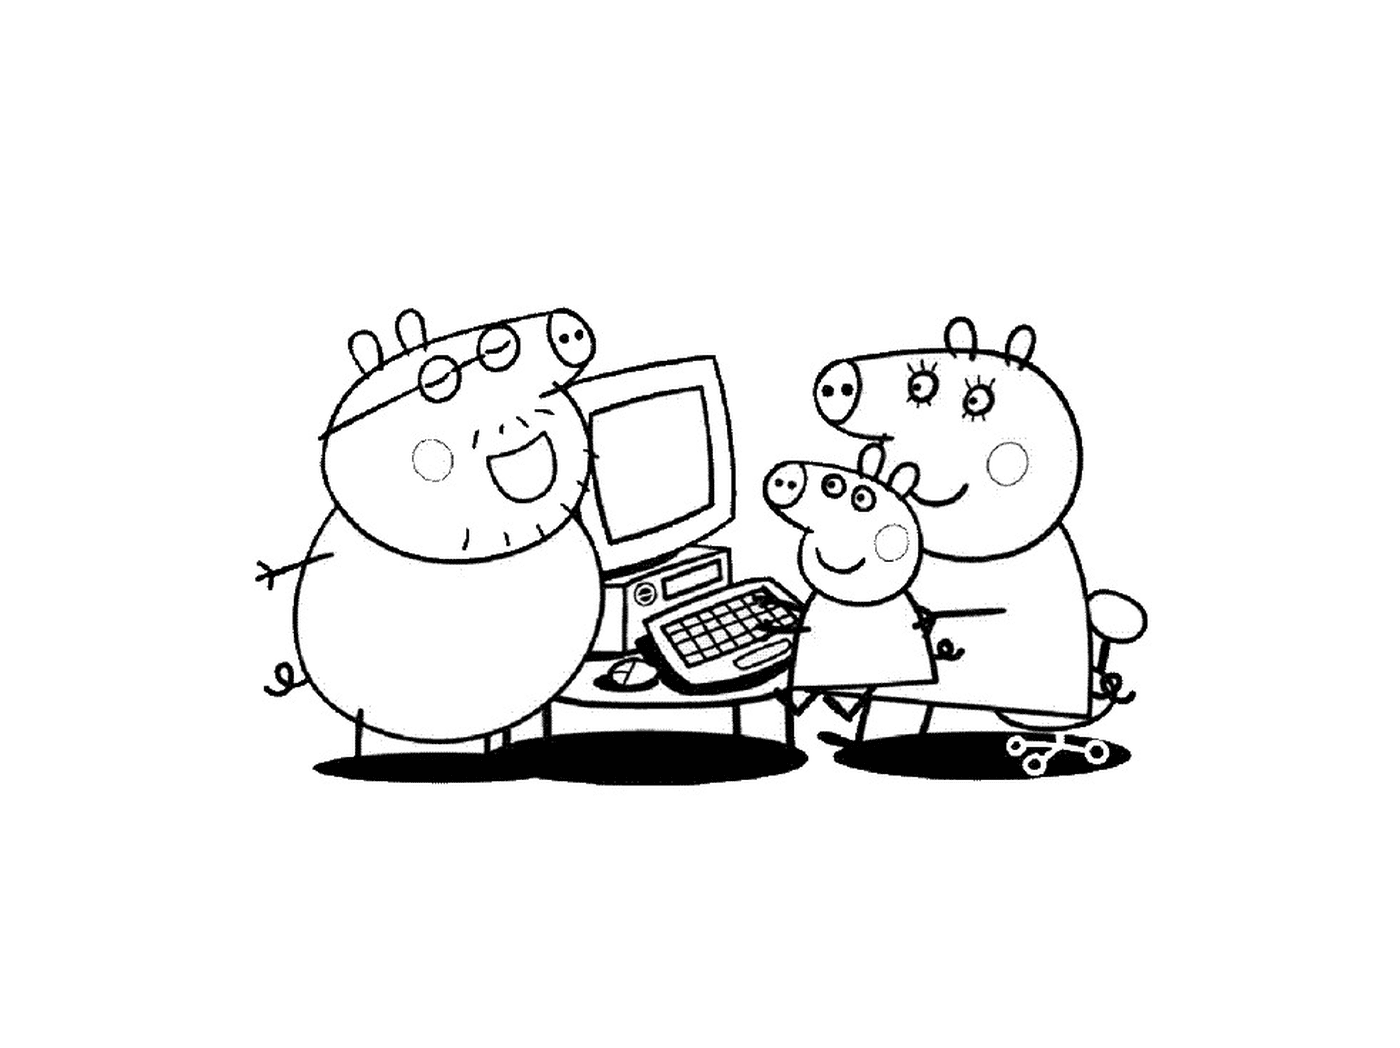  Eine Gruppe von Peppa Pig-Figuren vor einem Computer 